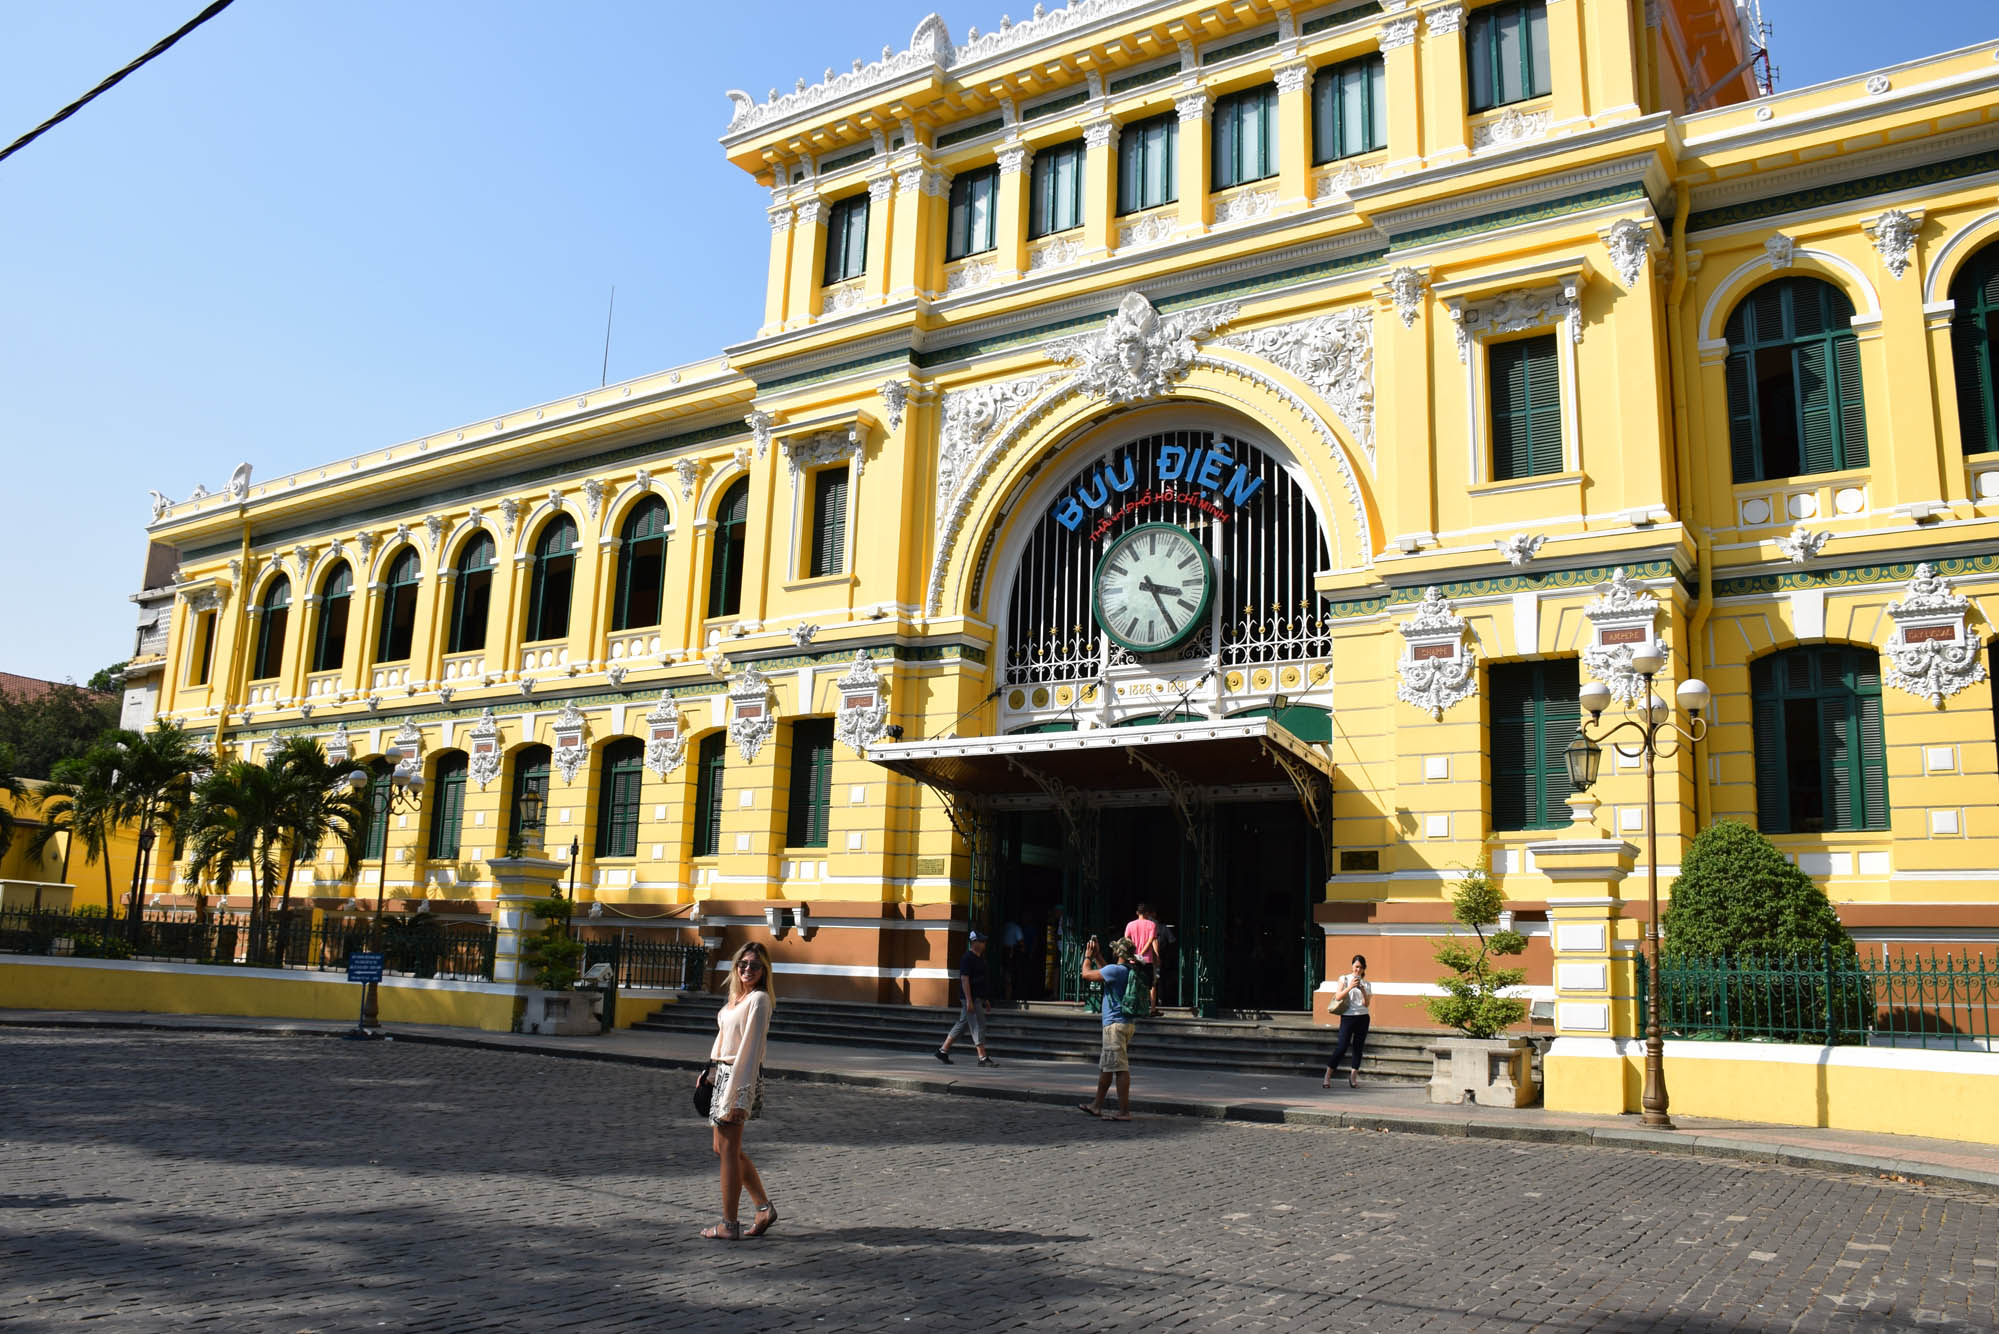 Post Office de Saigon - ainda em funcionamento!